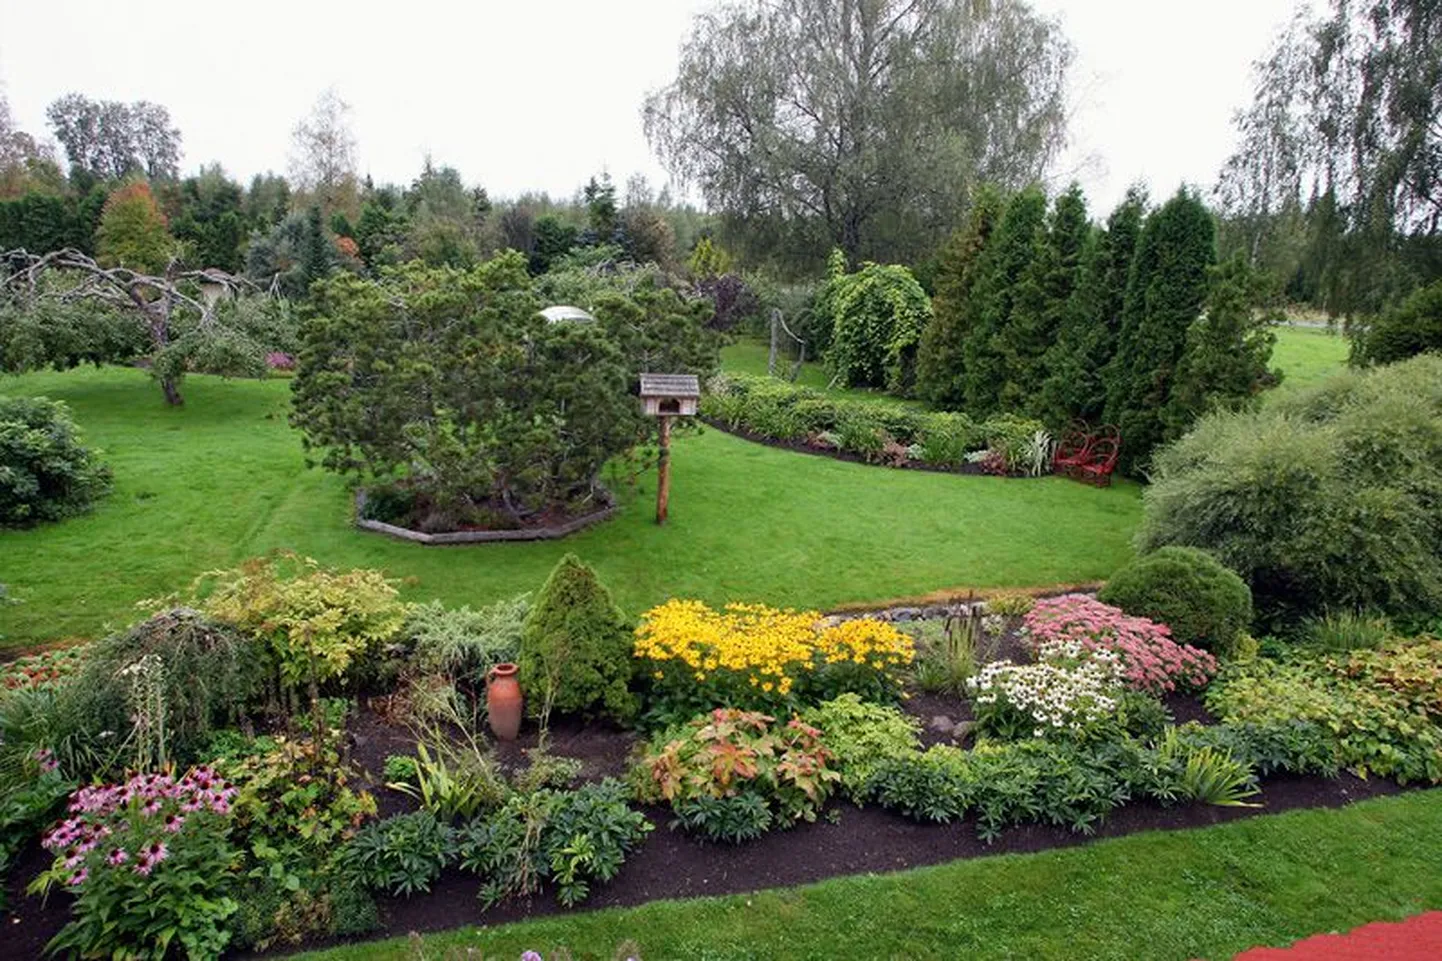 Mõdriku iluaed ja Niine keskus jagavad aiatarkust.